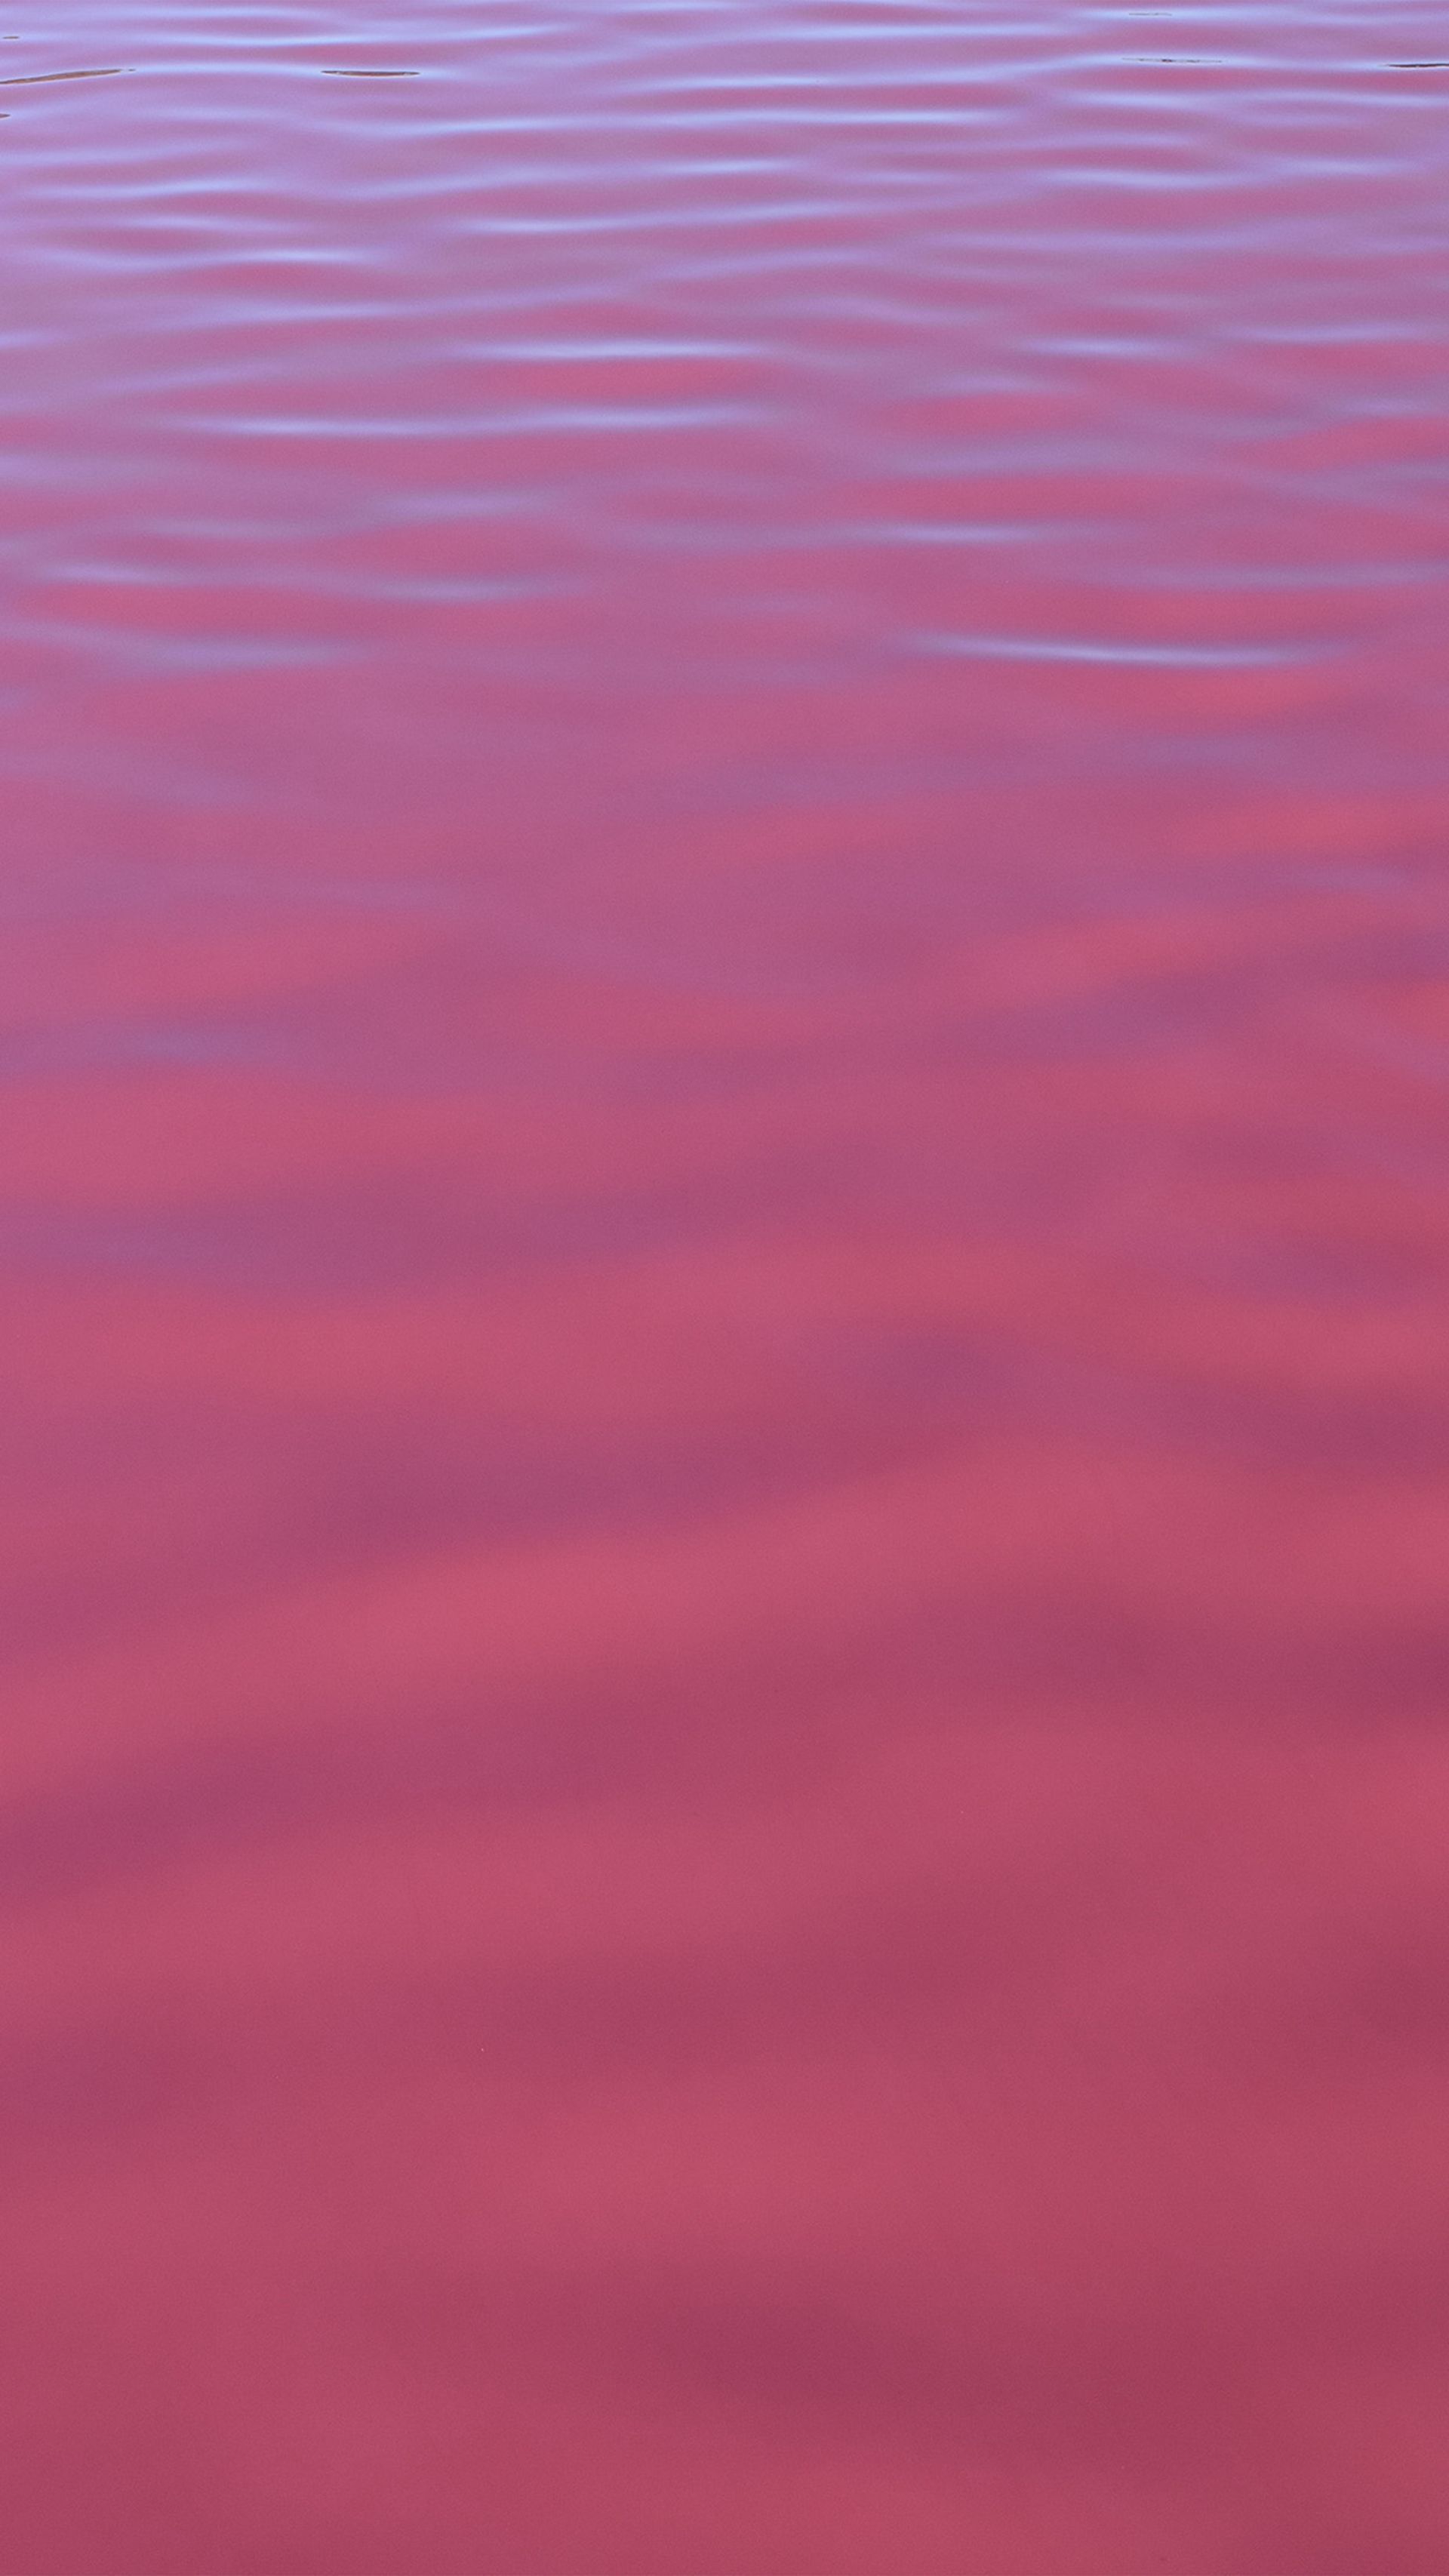 ピンクの水の壁紙,ピンク,赤,紫の,バイオレット,ライラック